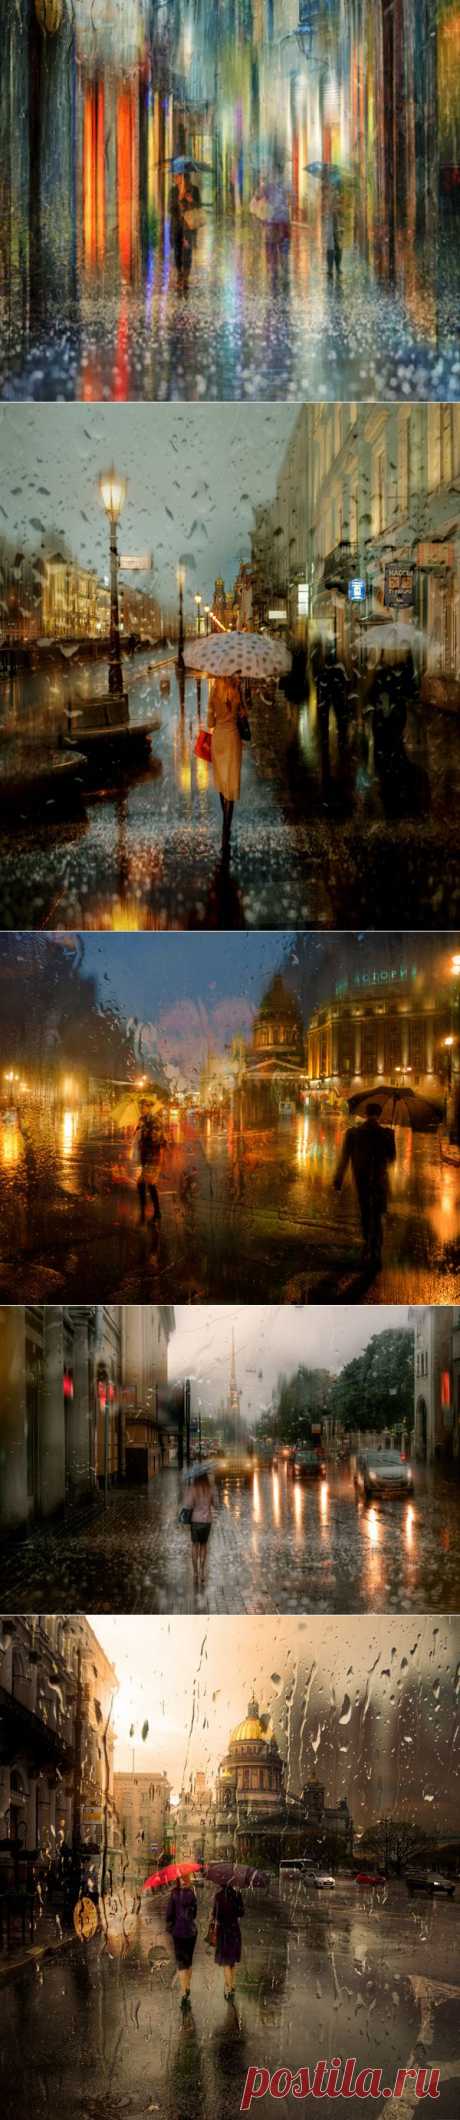 Дождливые городские пейзажи в картинных фотографиях Эдуарда Гордеева (Eduard Gordeev) - Фотоискусство